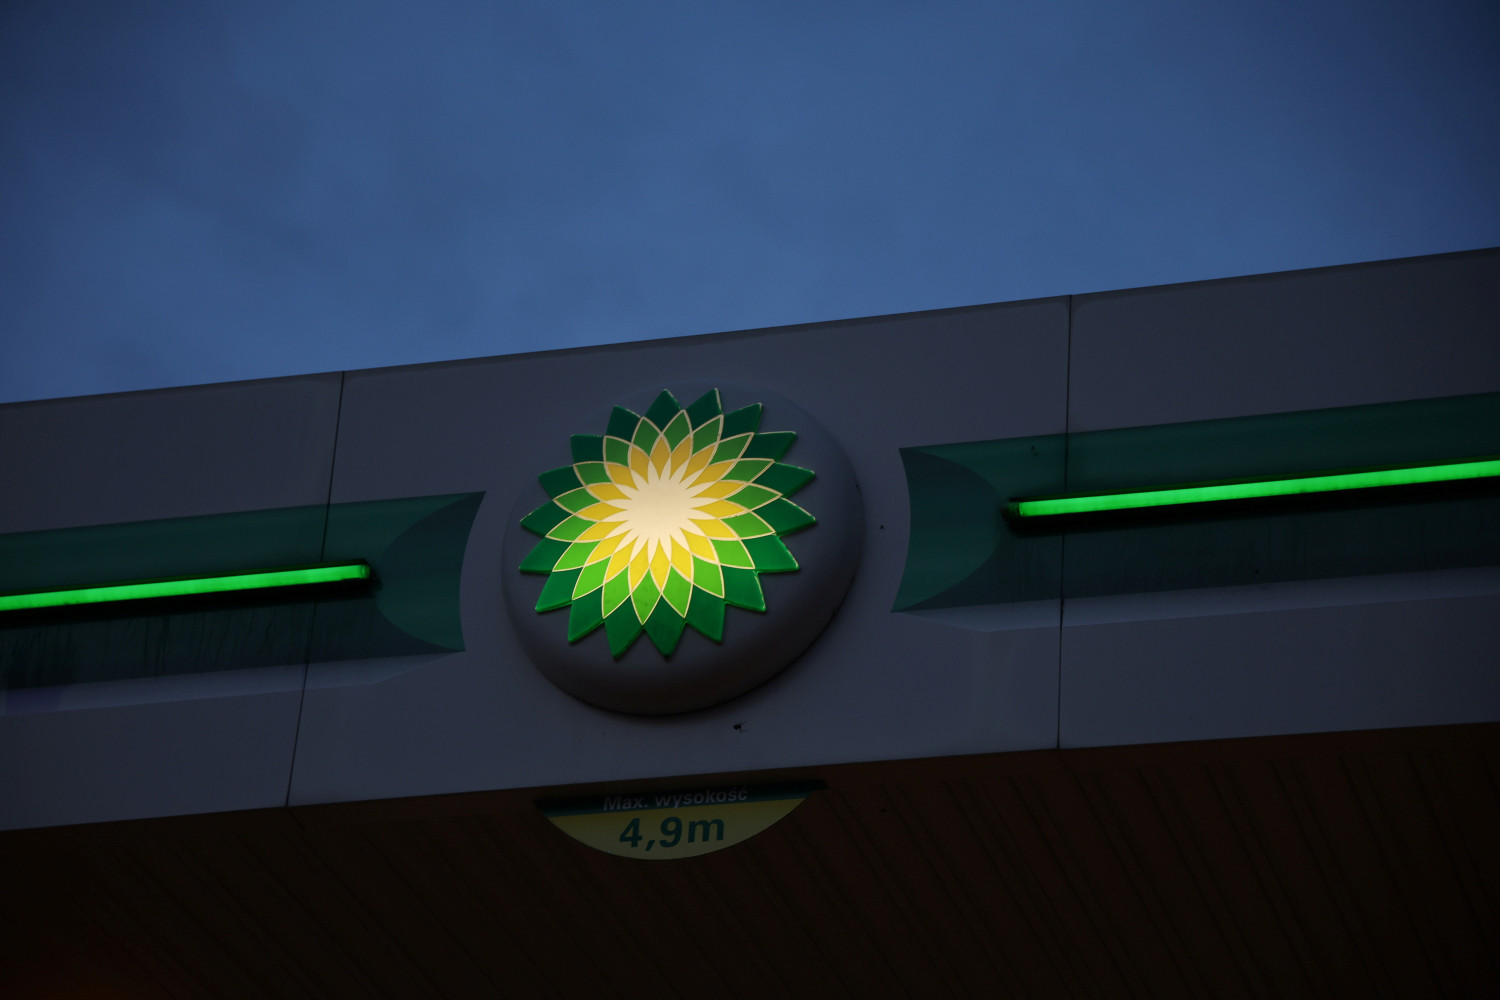 le logo de british petrol bp a la station service de pienkow en pologne 20230422145520 